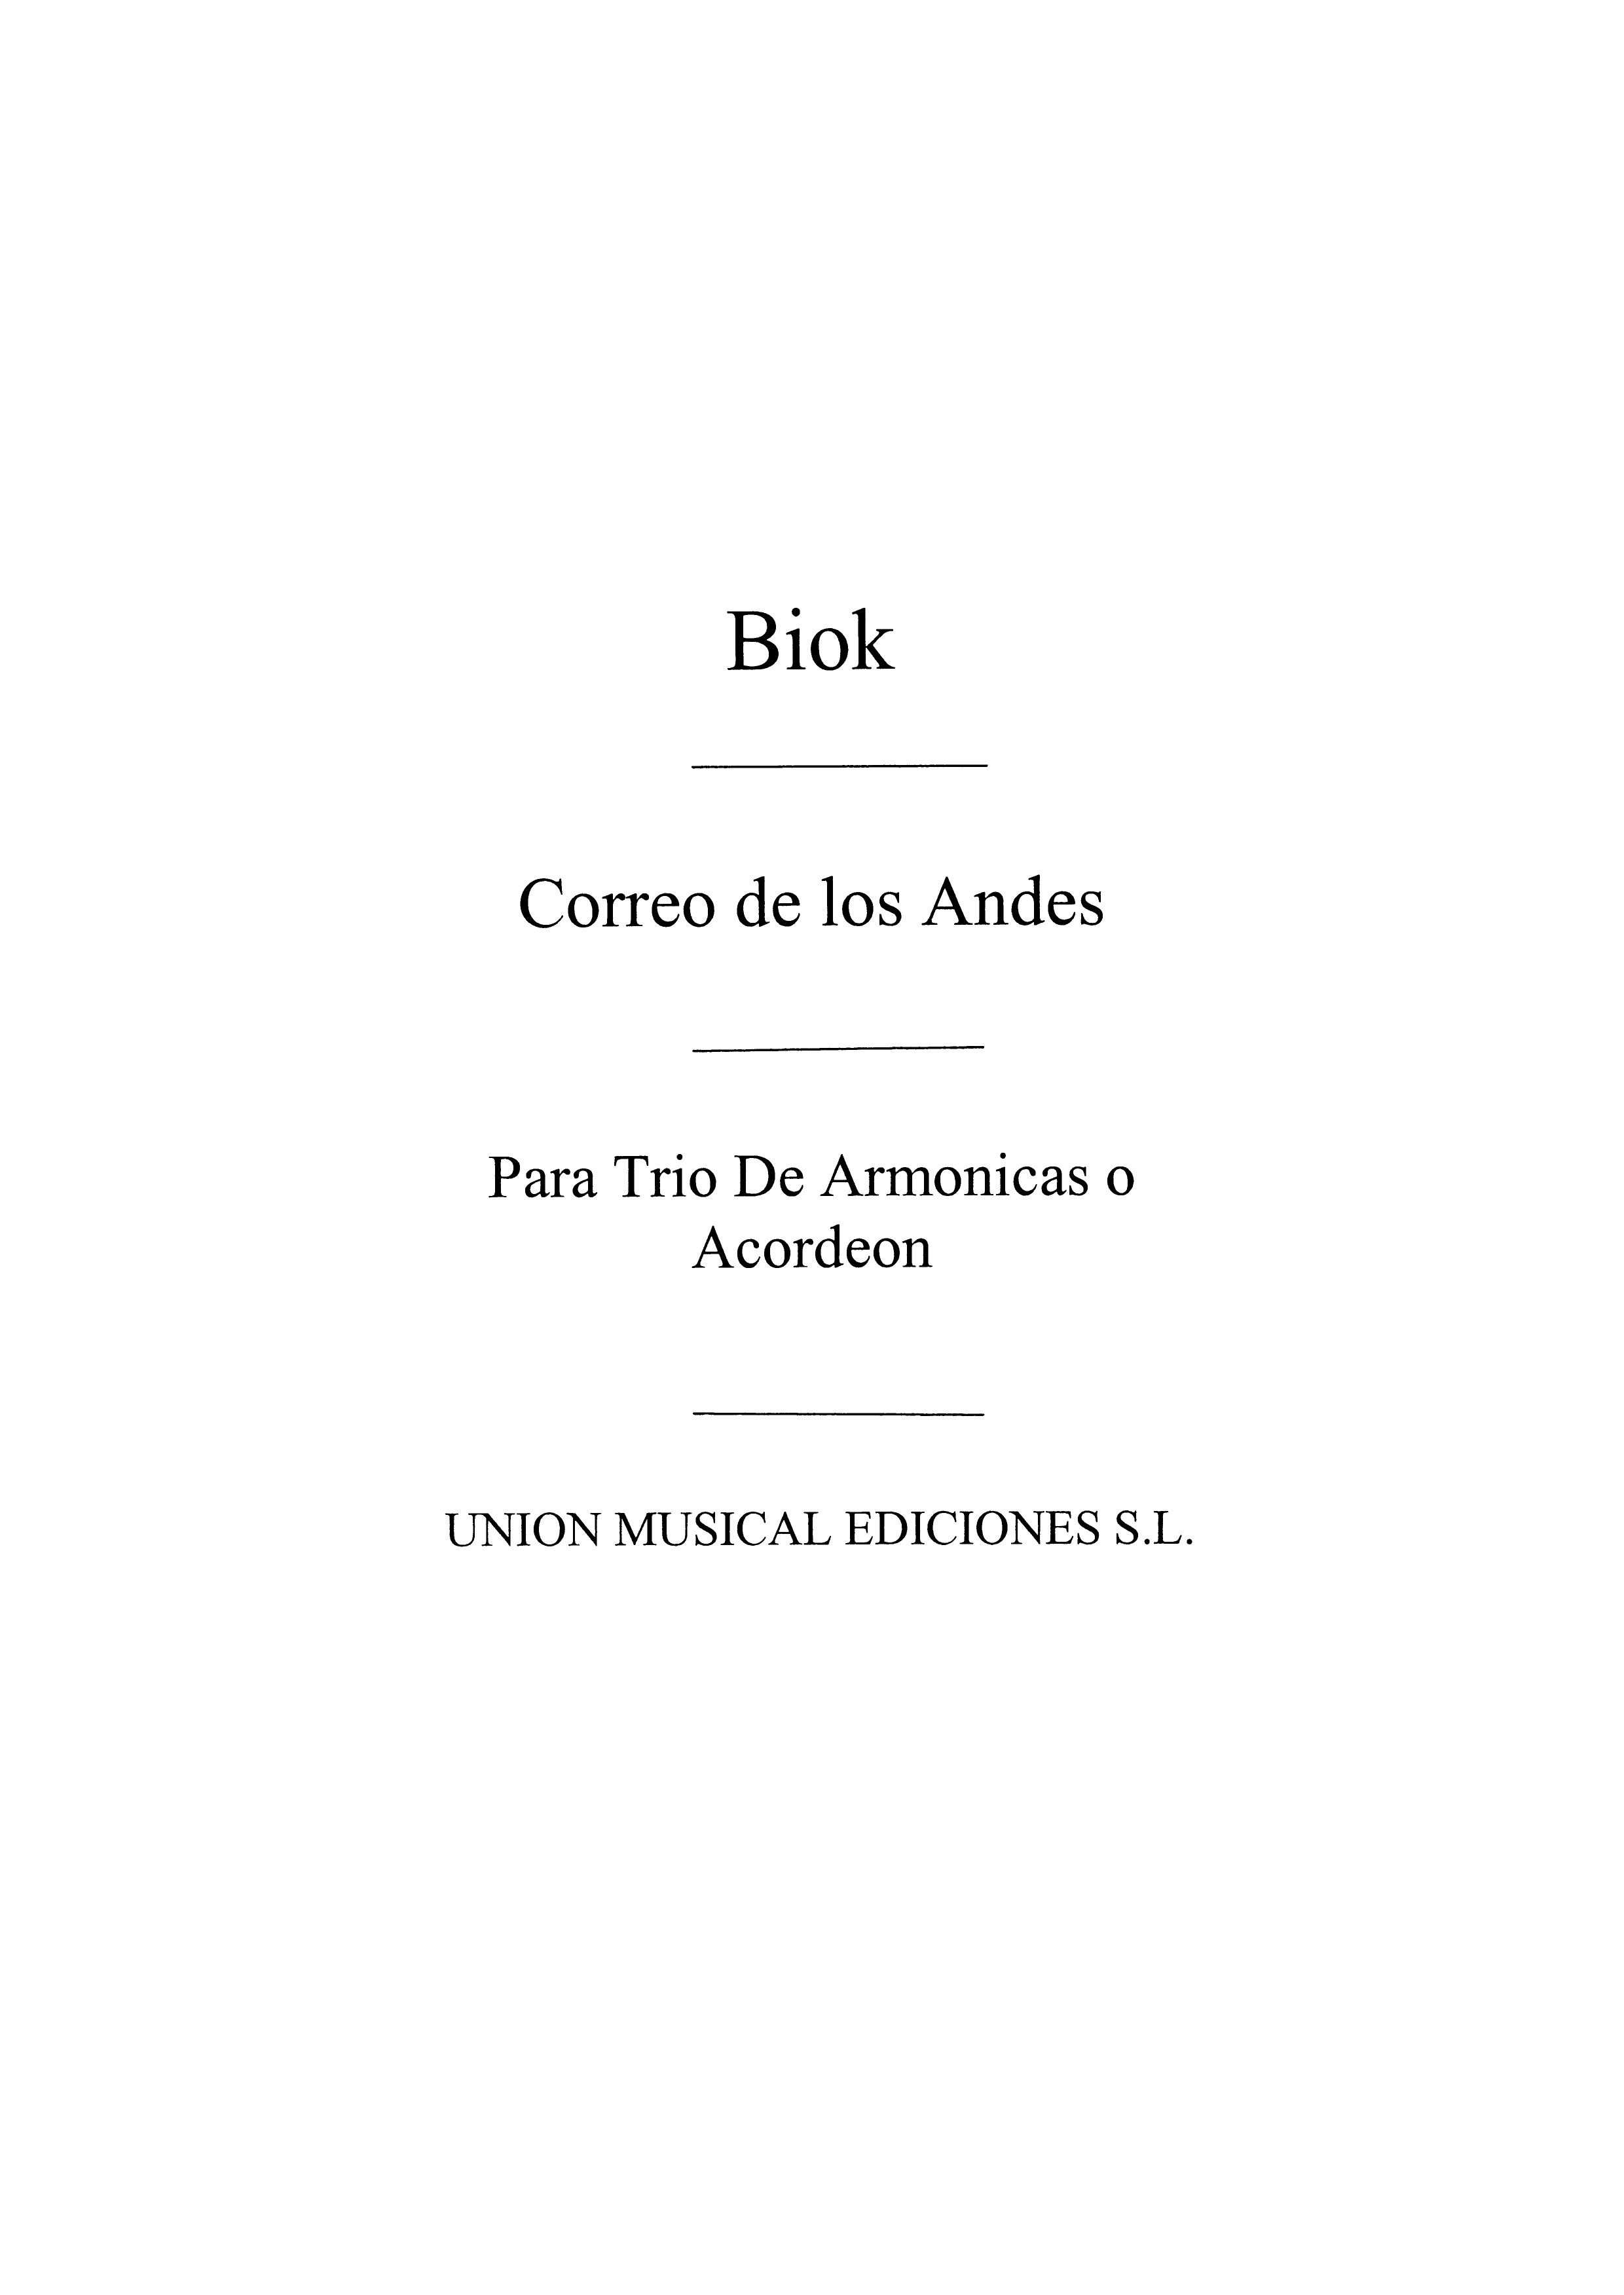 Biok: Correo De Los Andes, for Accordion